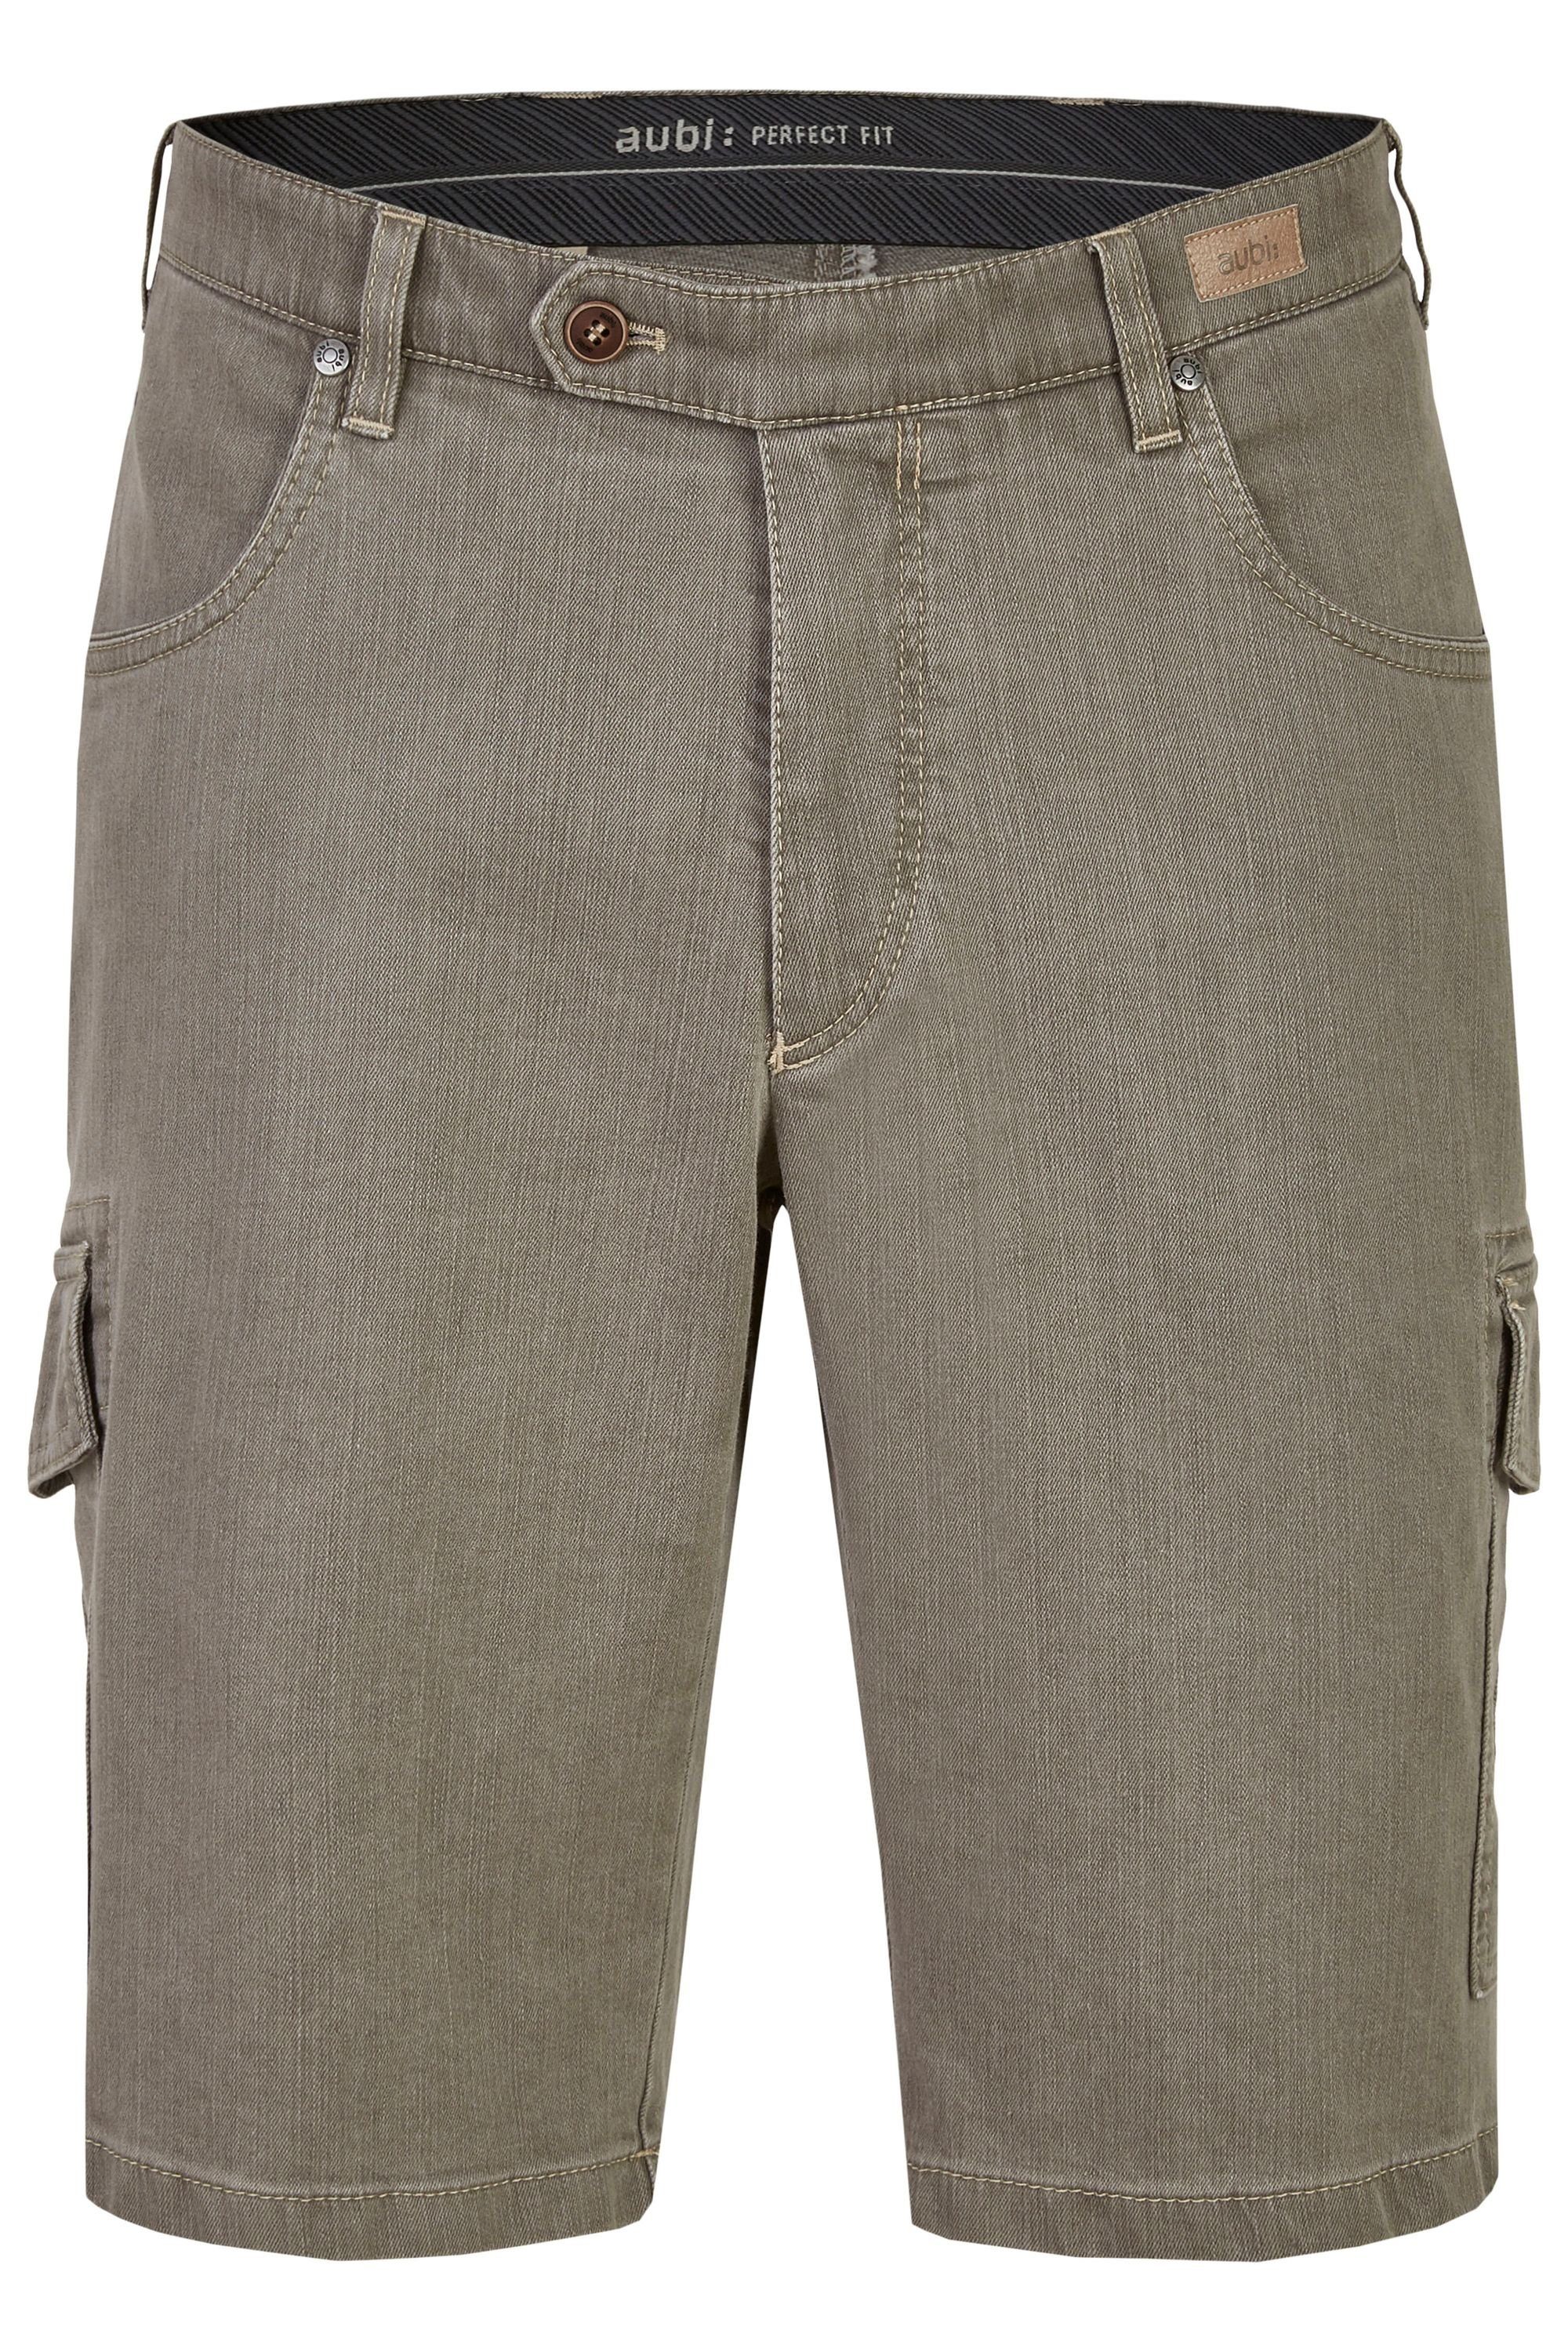 aubi: Bequeme Jeans aubi Perfect Fit Herren Sommer Jeans Cargo Shorts Stretch aus Baumwolle High Flex Modell 616 olive (24)